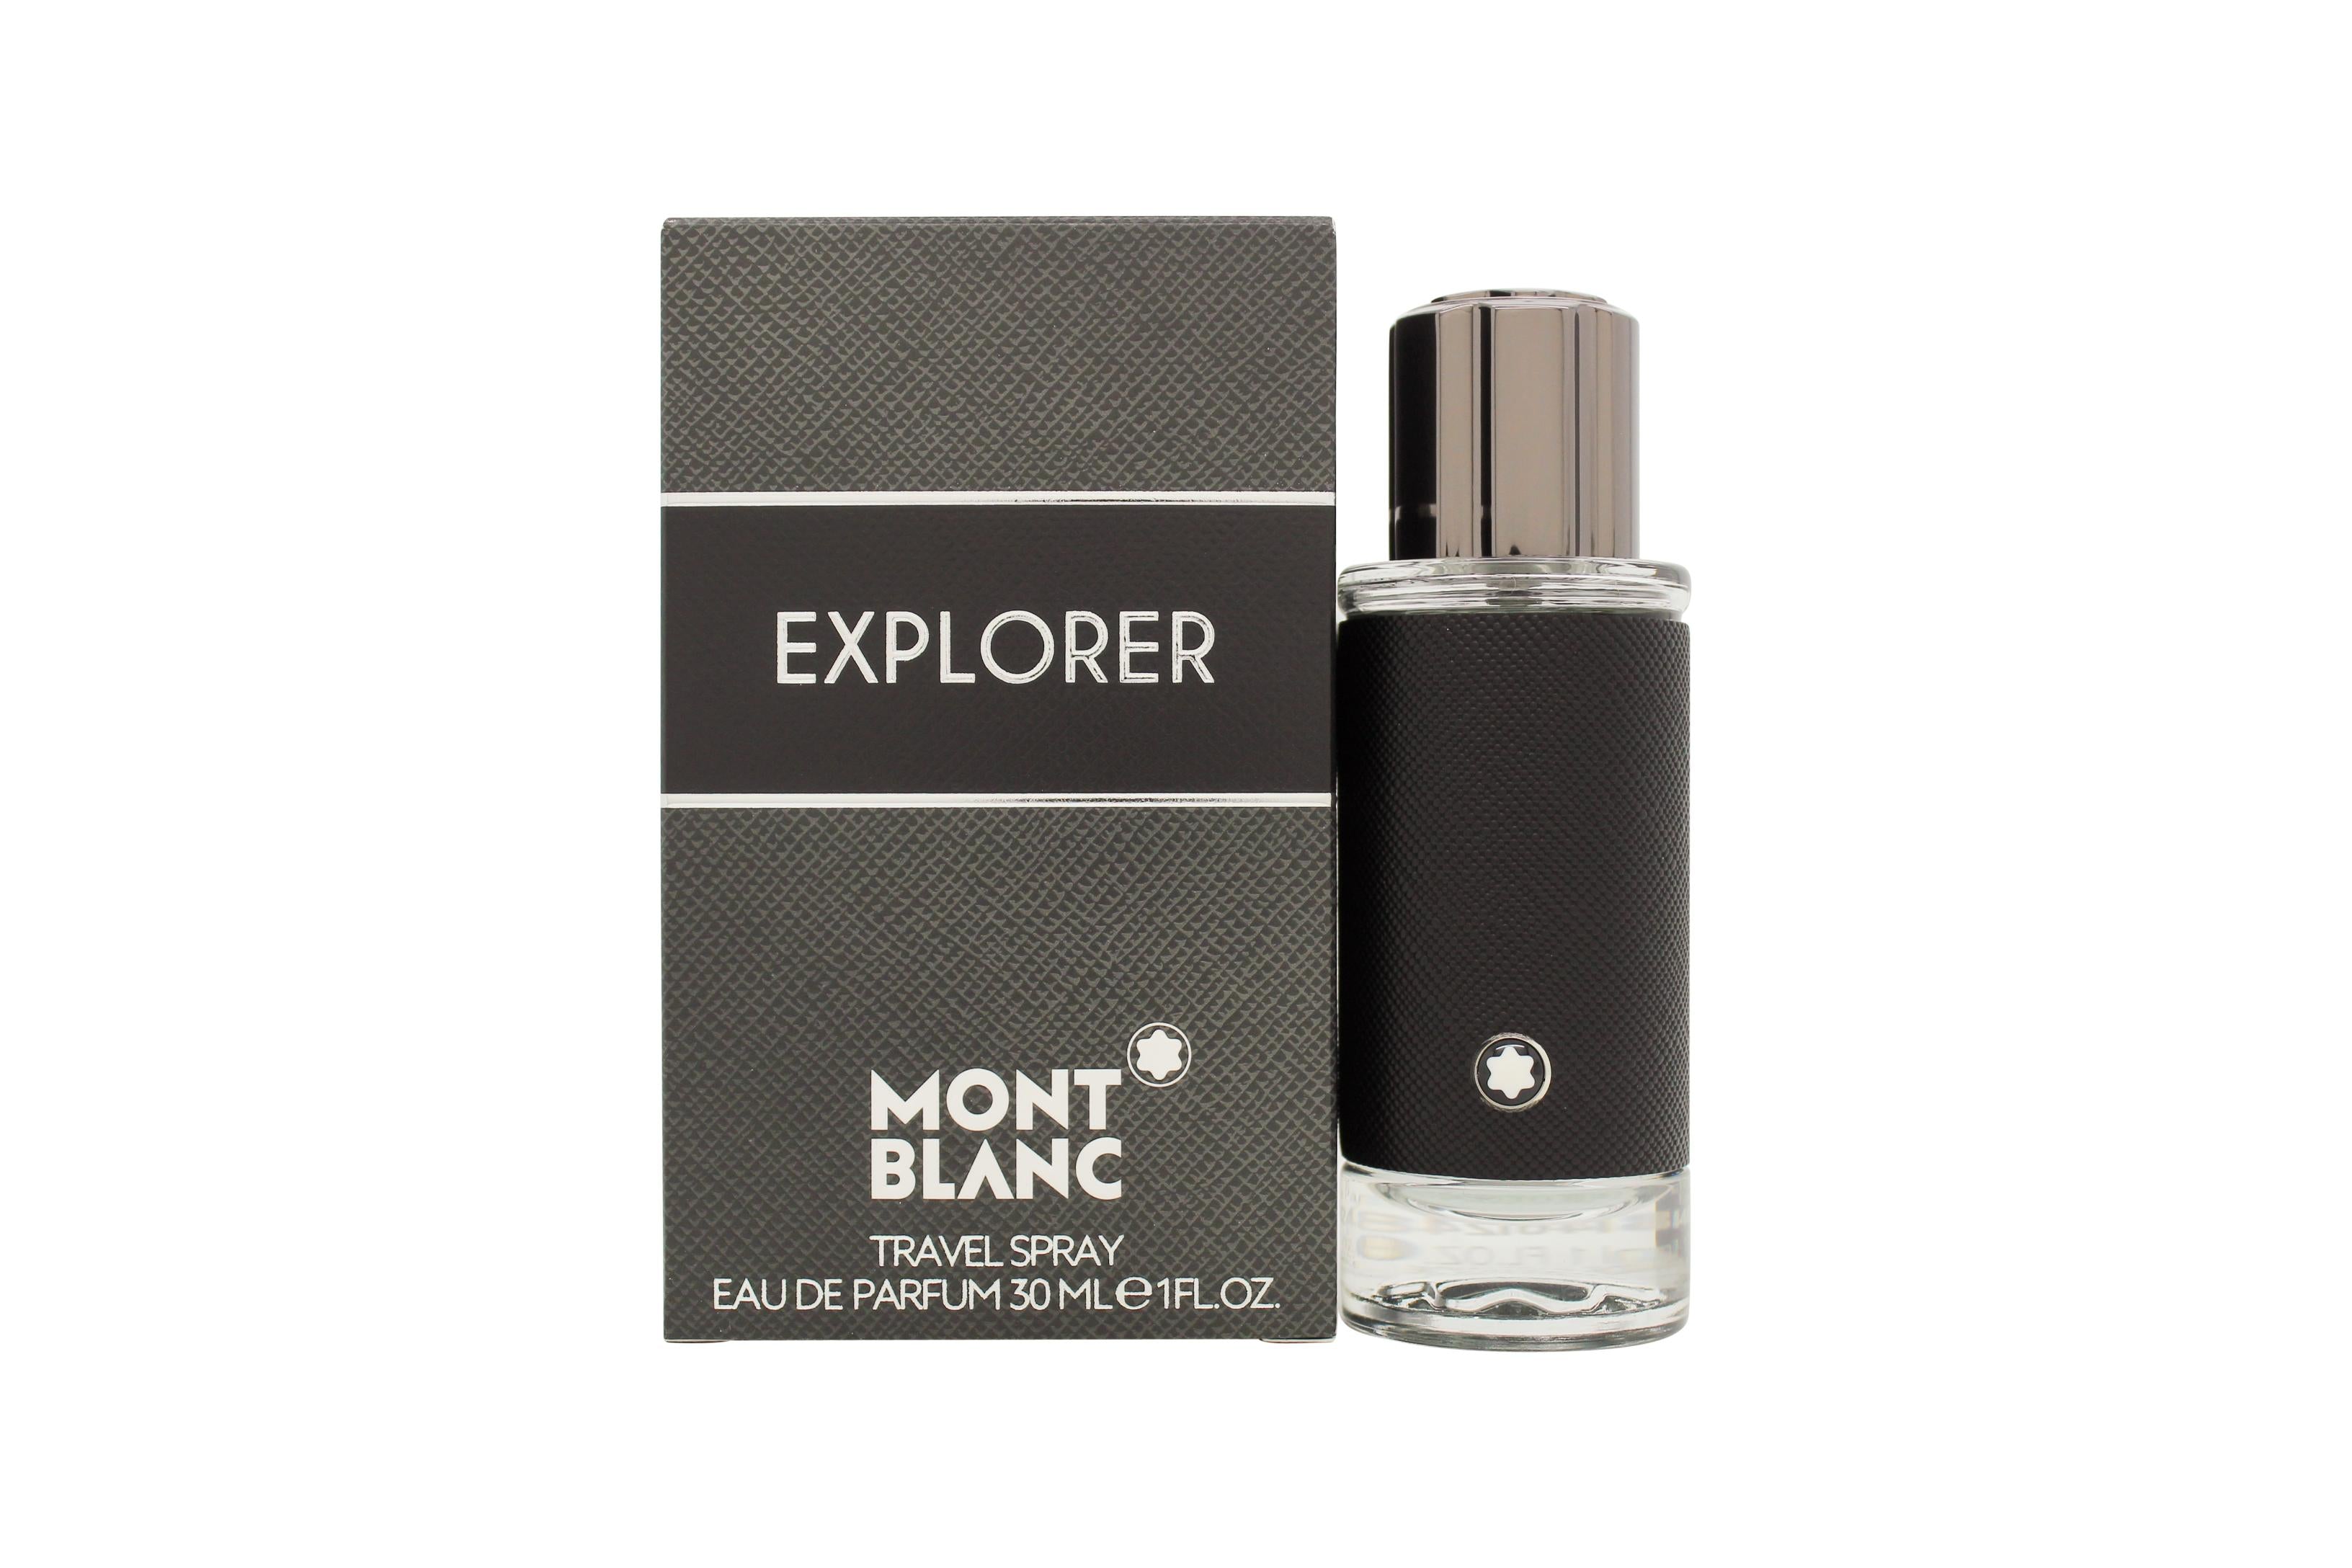 View Mont Blanc Explorer Eau de Parfum 30ml Spray information